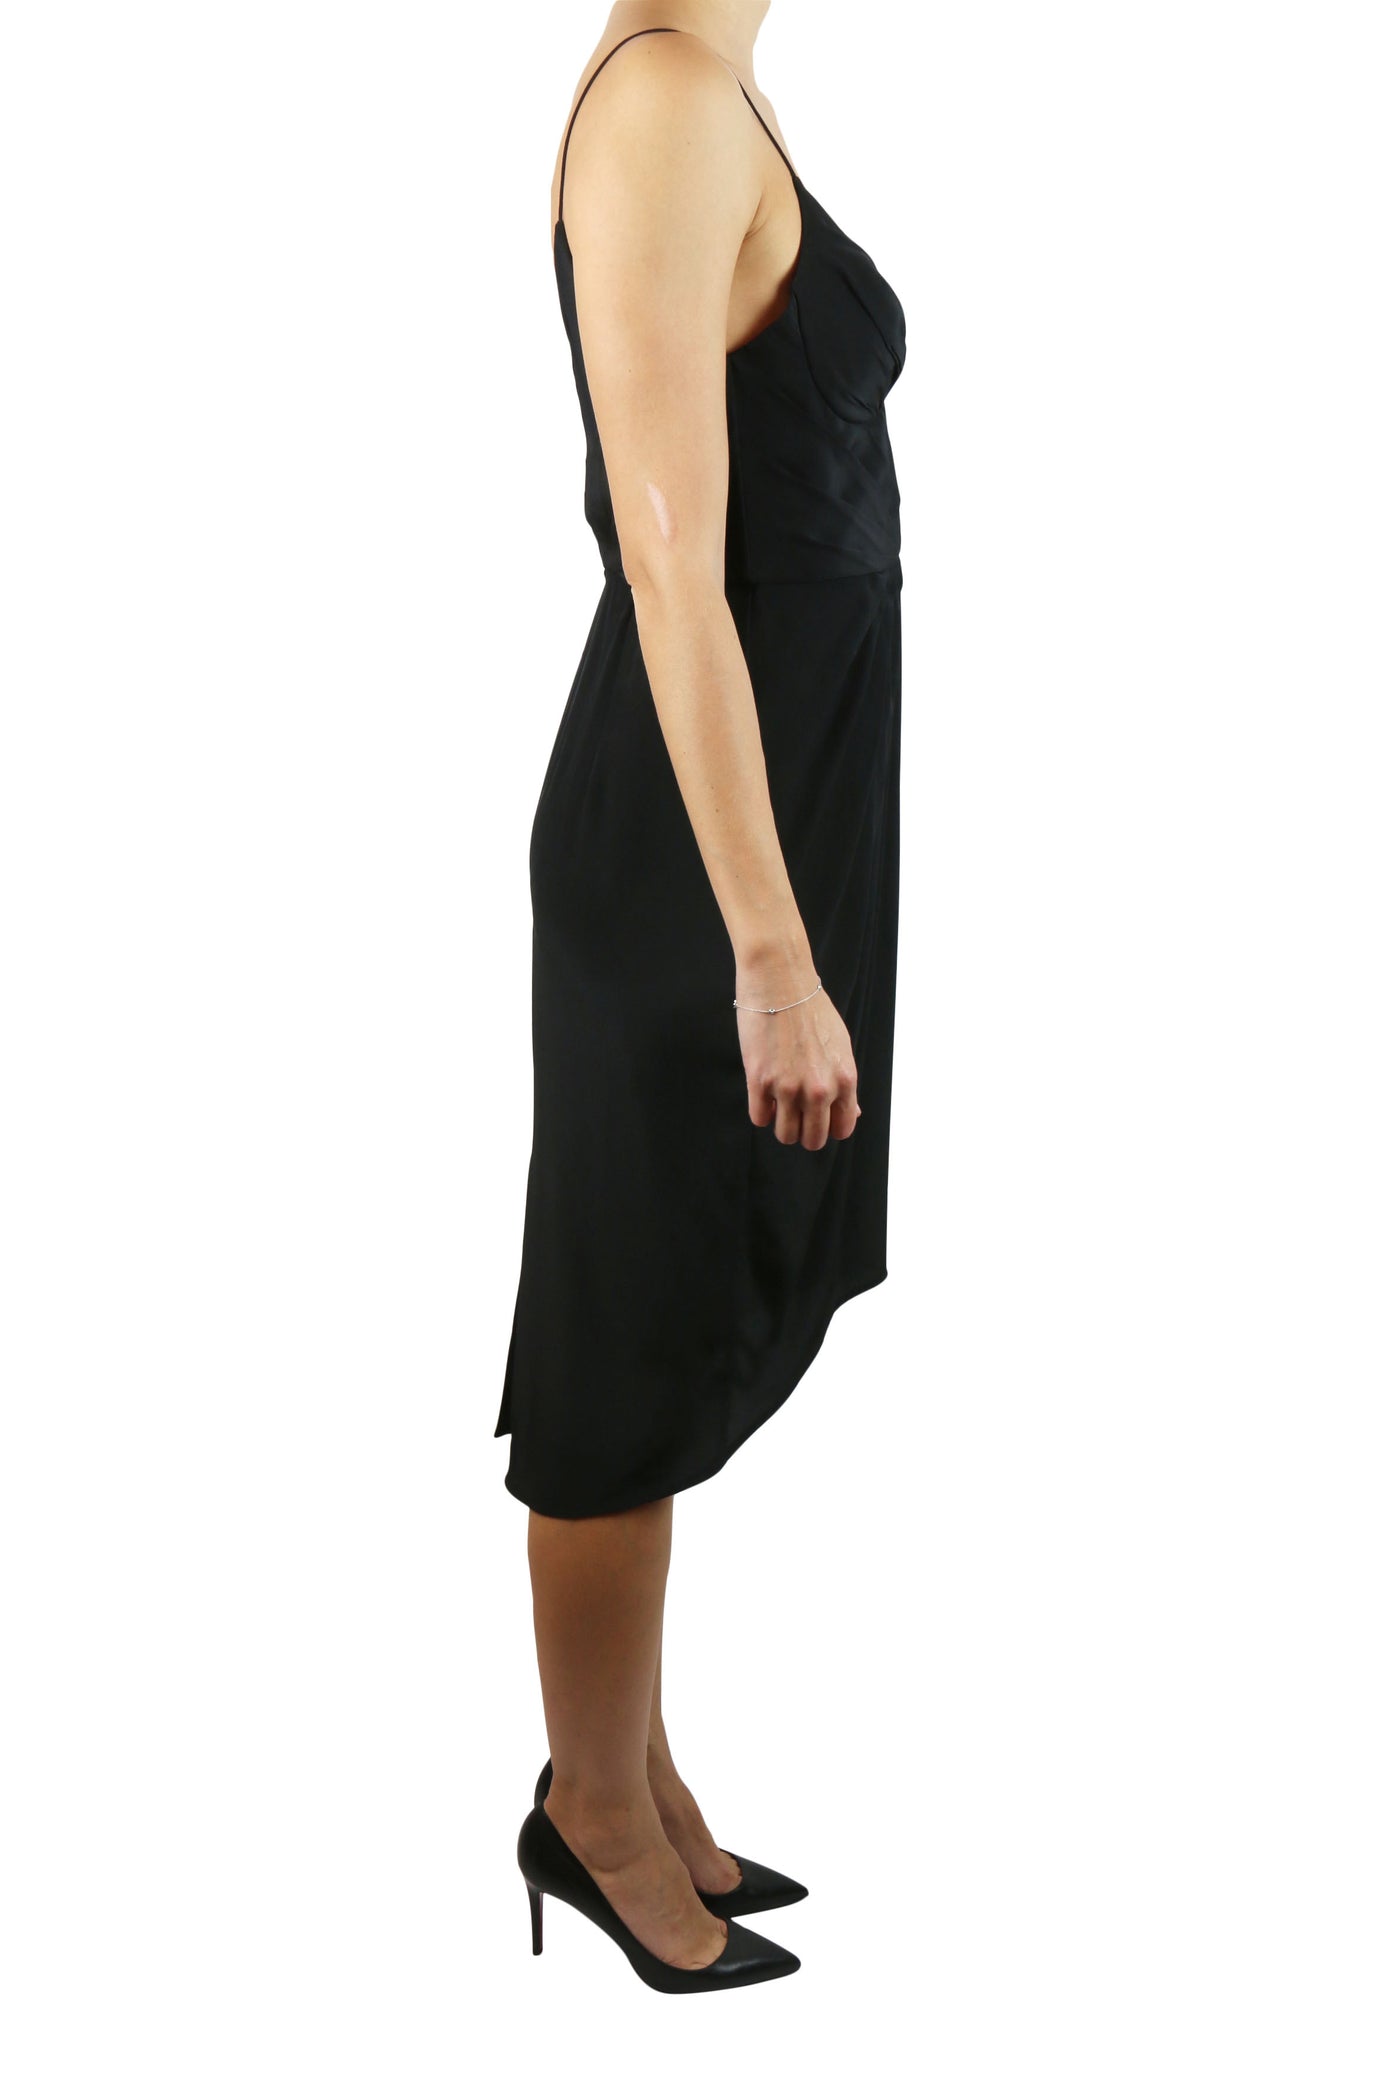 Balconette black silk dress